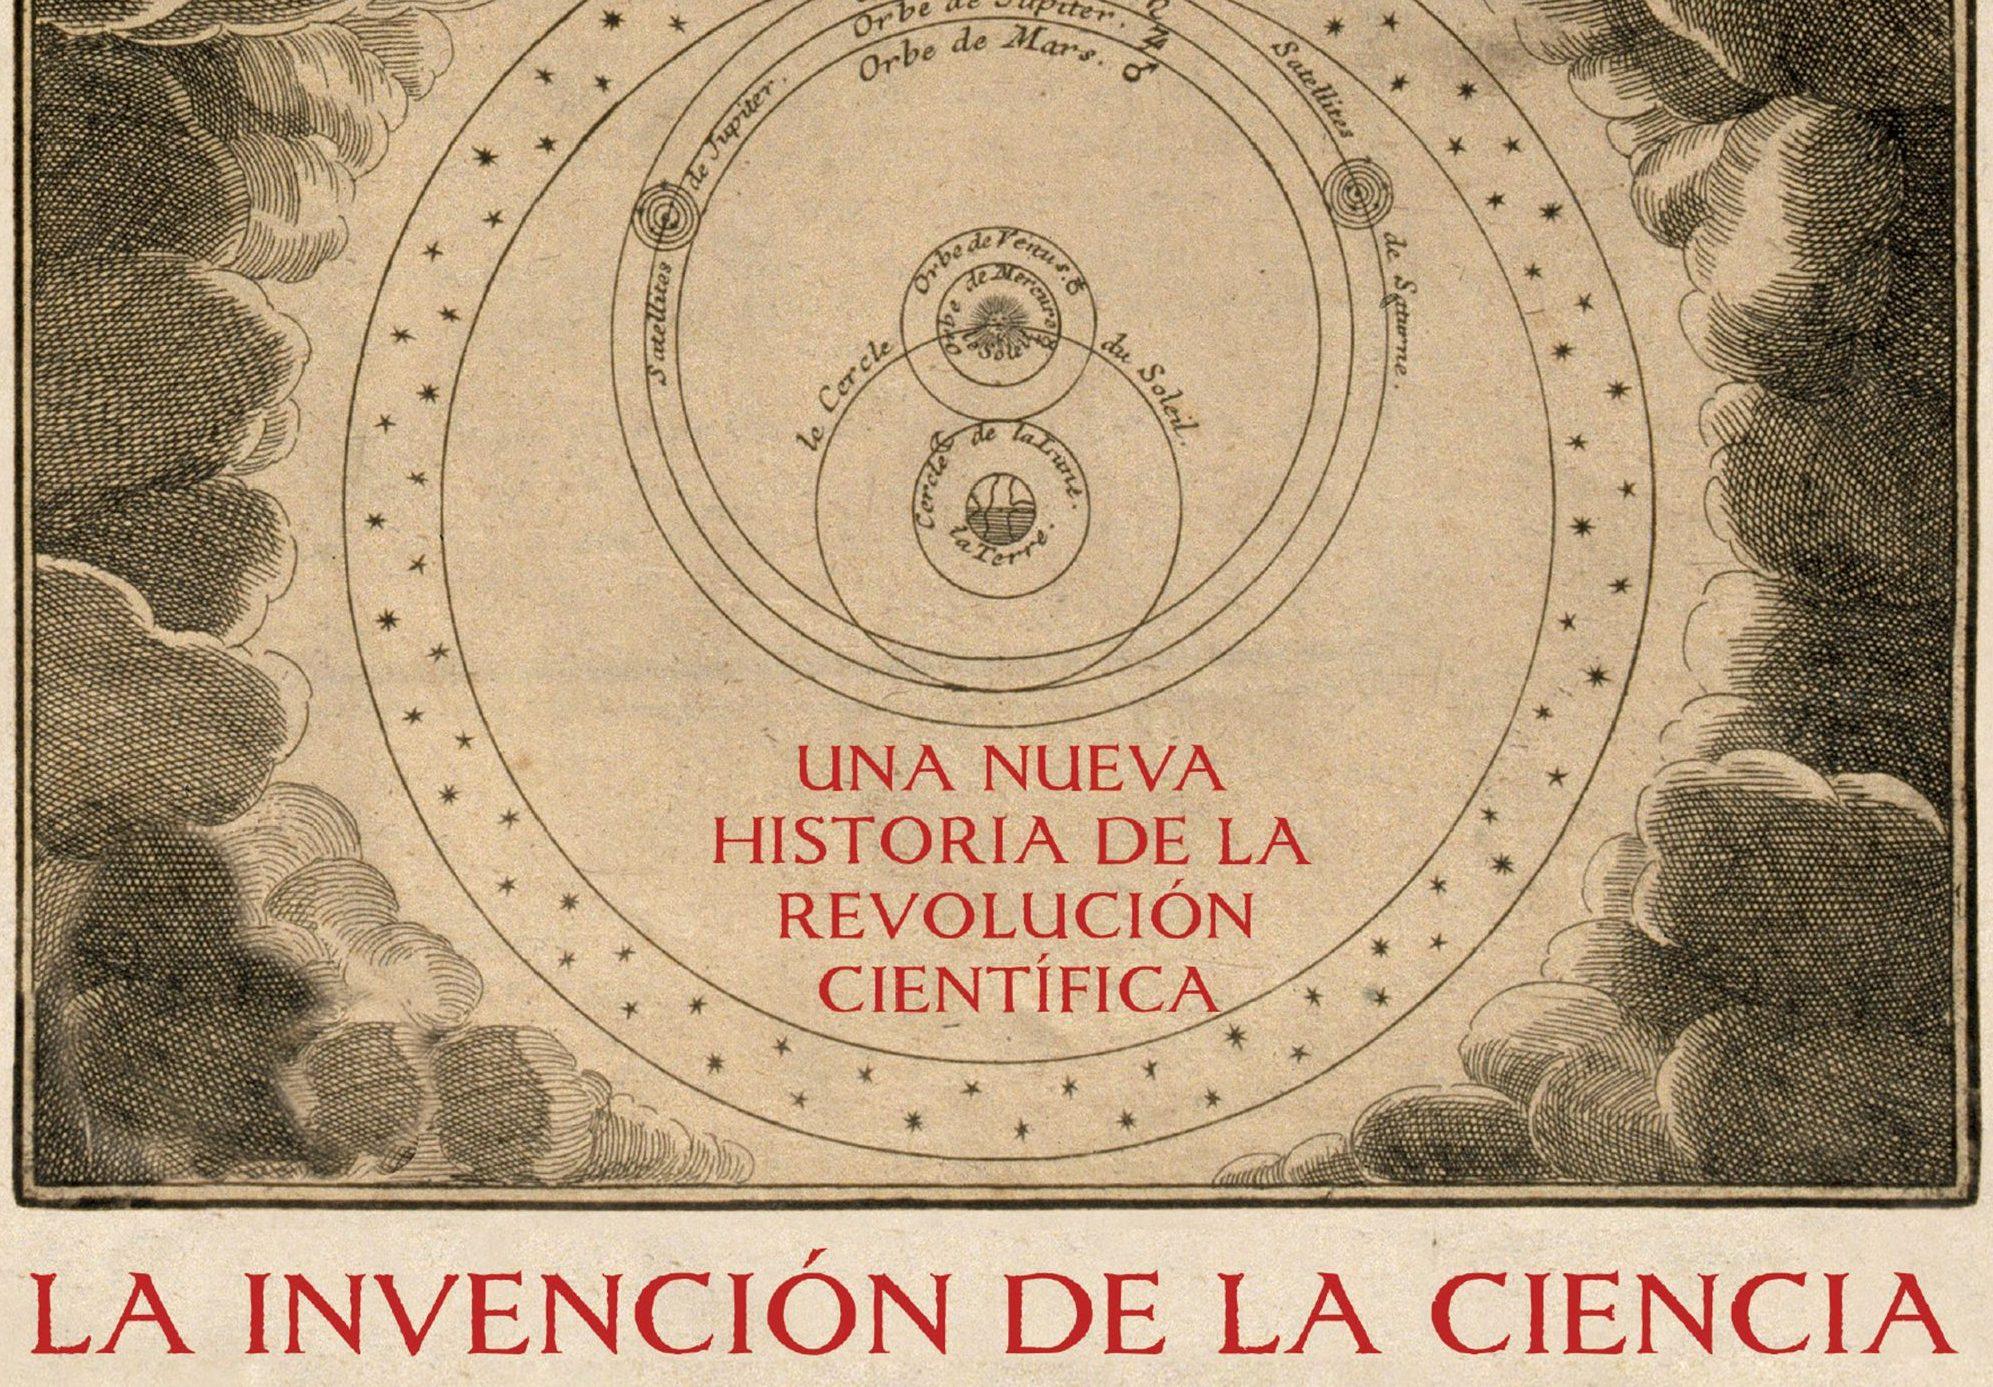 La invención de la ciencia, los nuevos registros de la revolución científica (Capítulo de regalo)